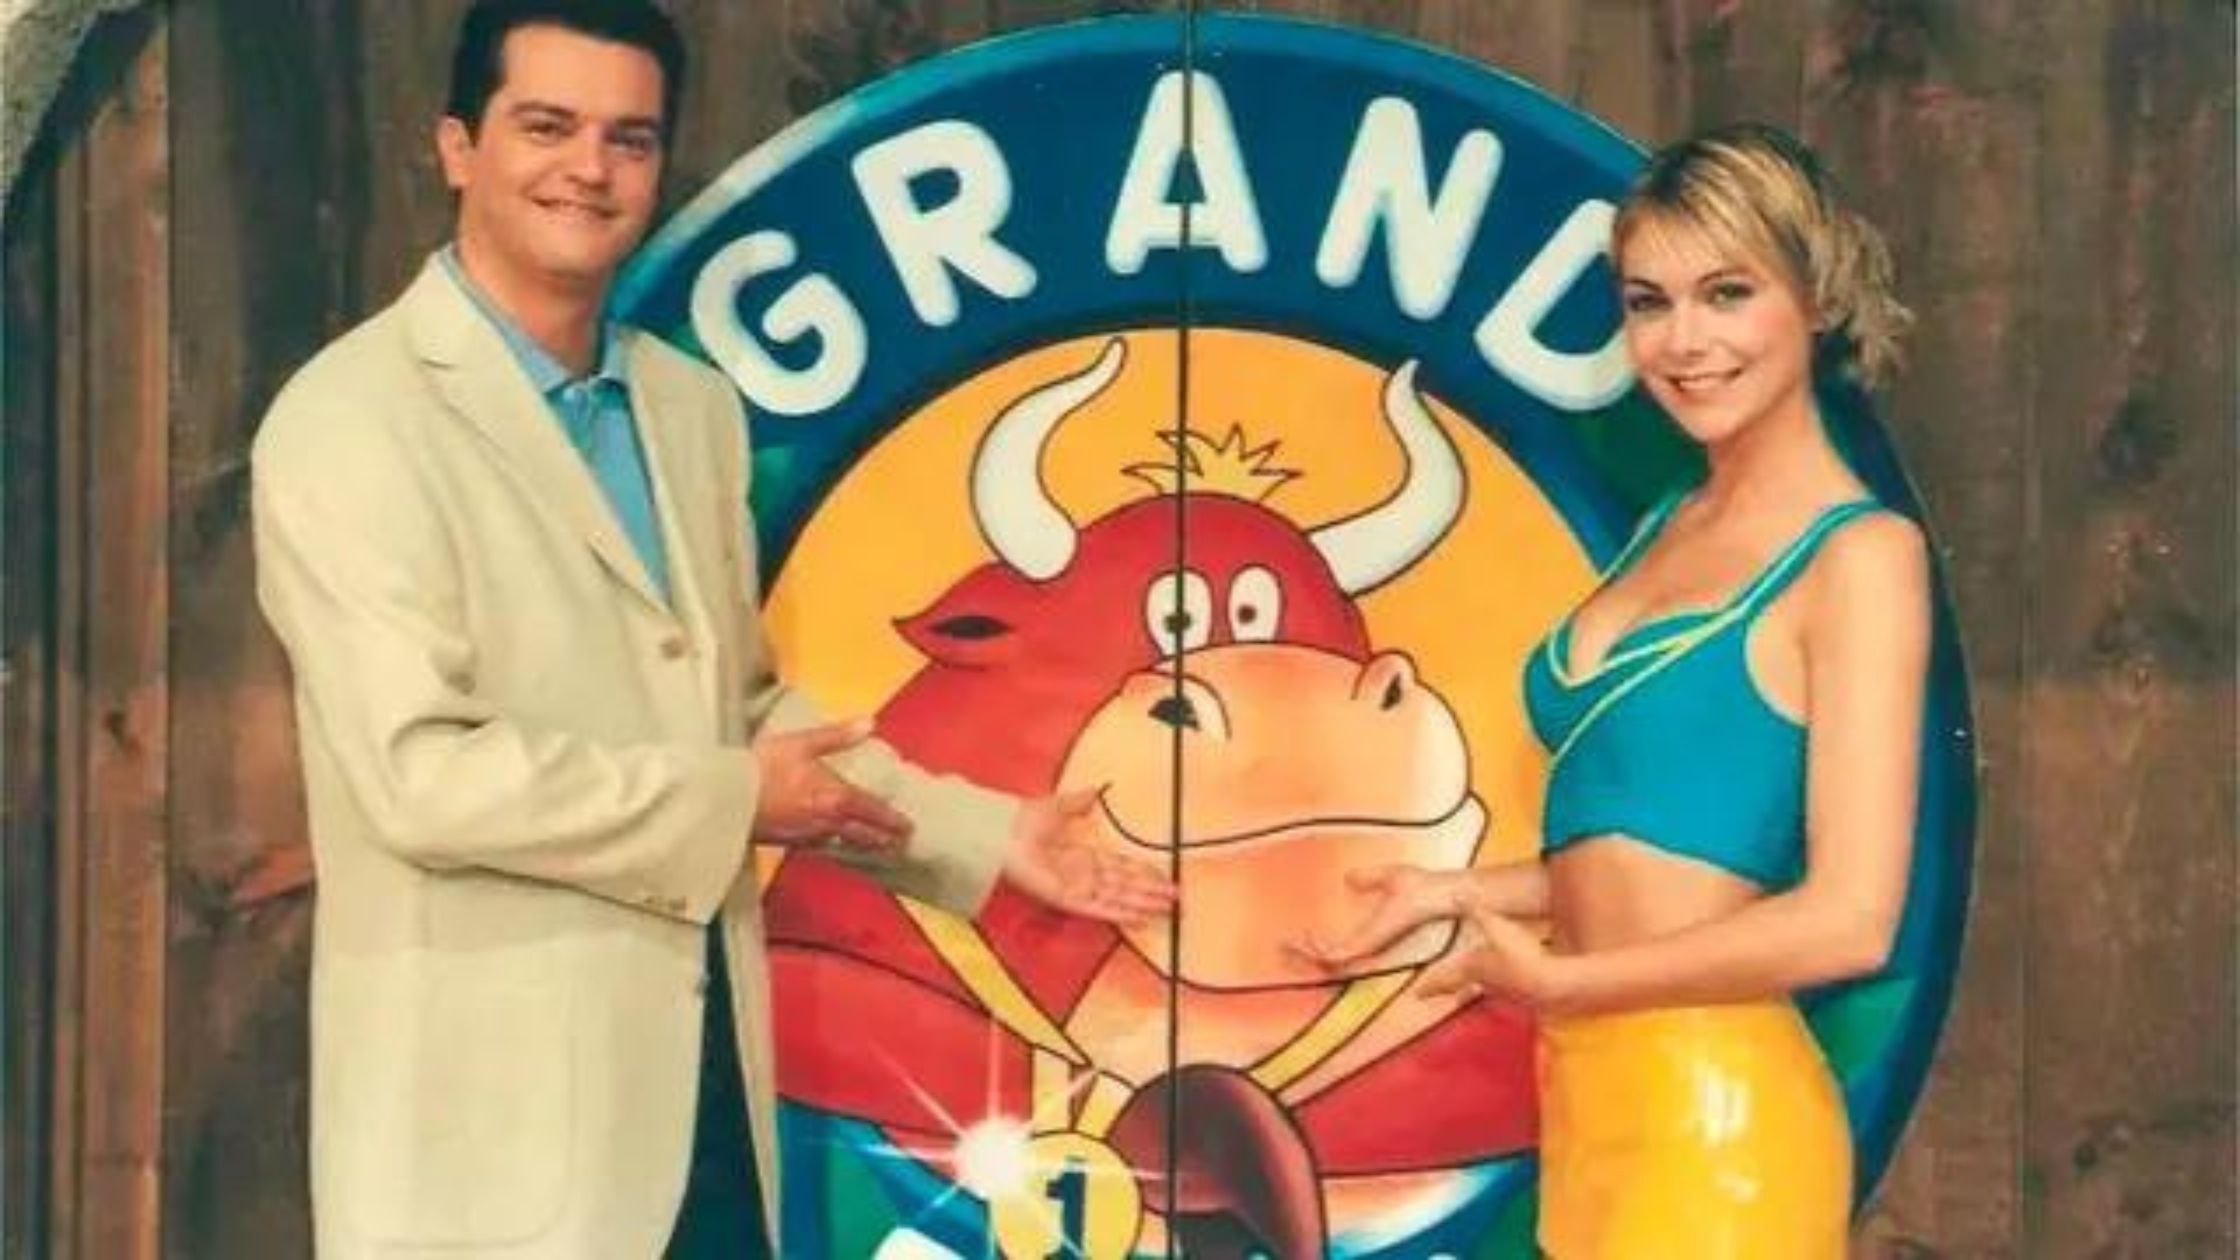 El Grand Prix del verano fue un programa de televisión muy famoso en los 90 y 00´s. 